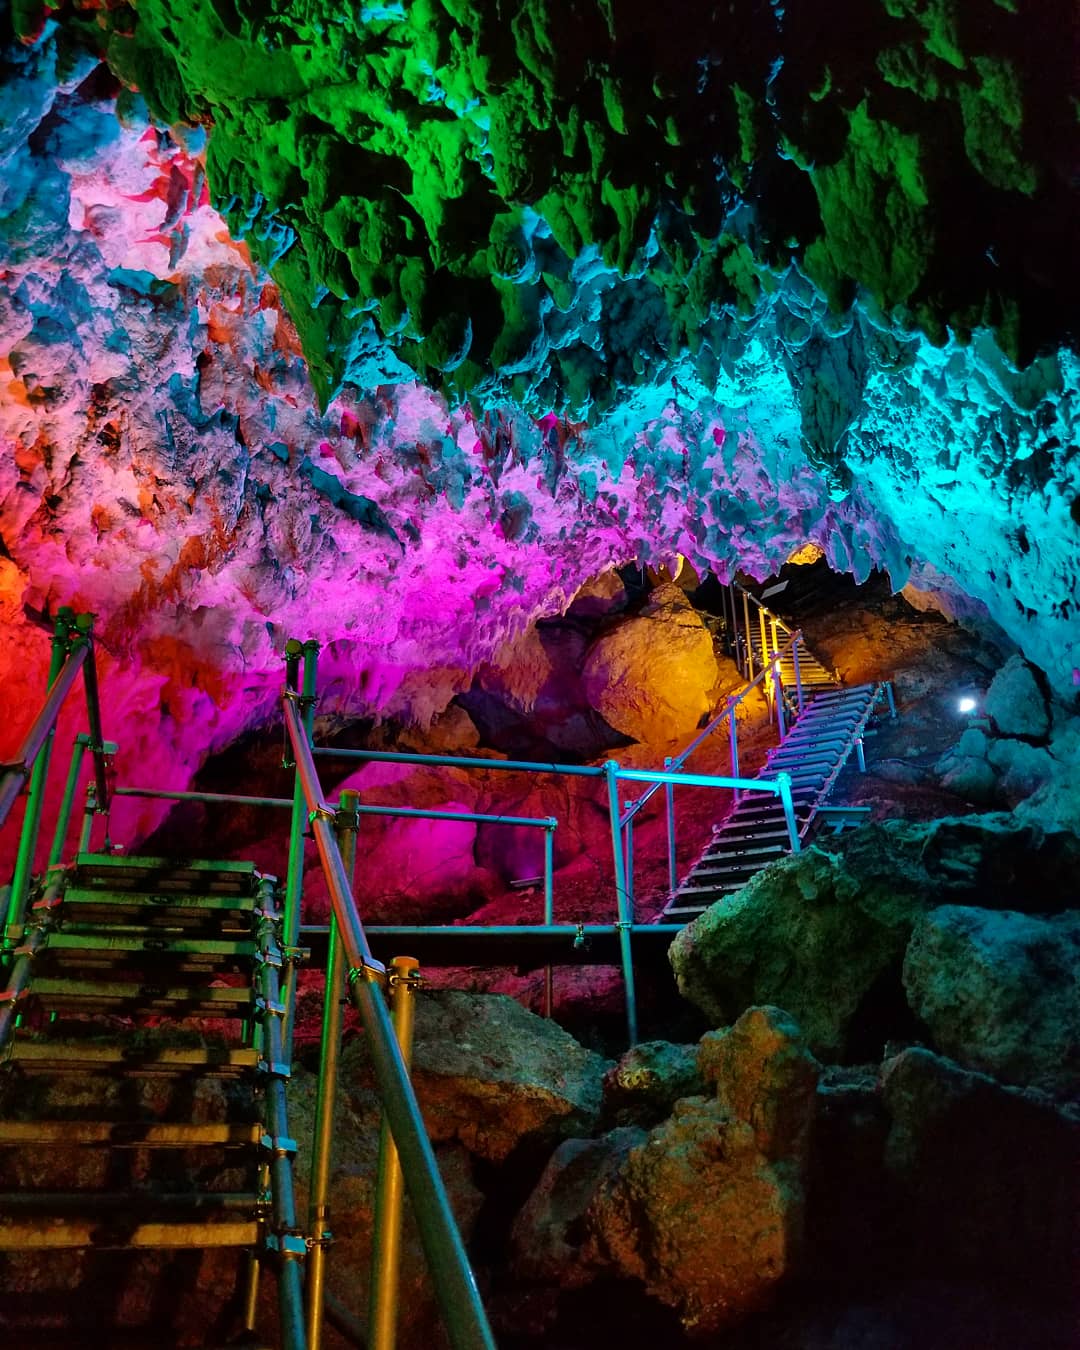 沖縄県の洞窟 鍾乳洞 穴場スポットを紹介 沖縄観光で人気のおすすめ洞窟探検なら Cave Okinawa